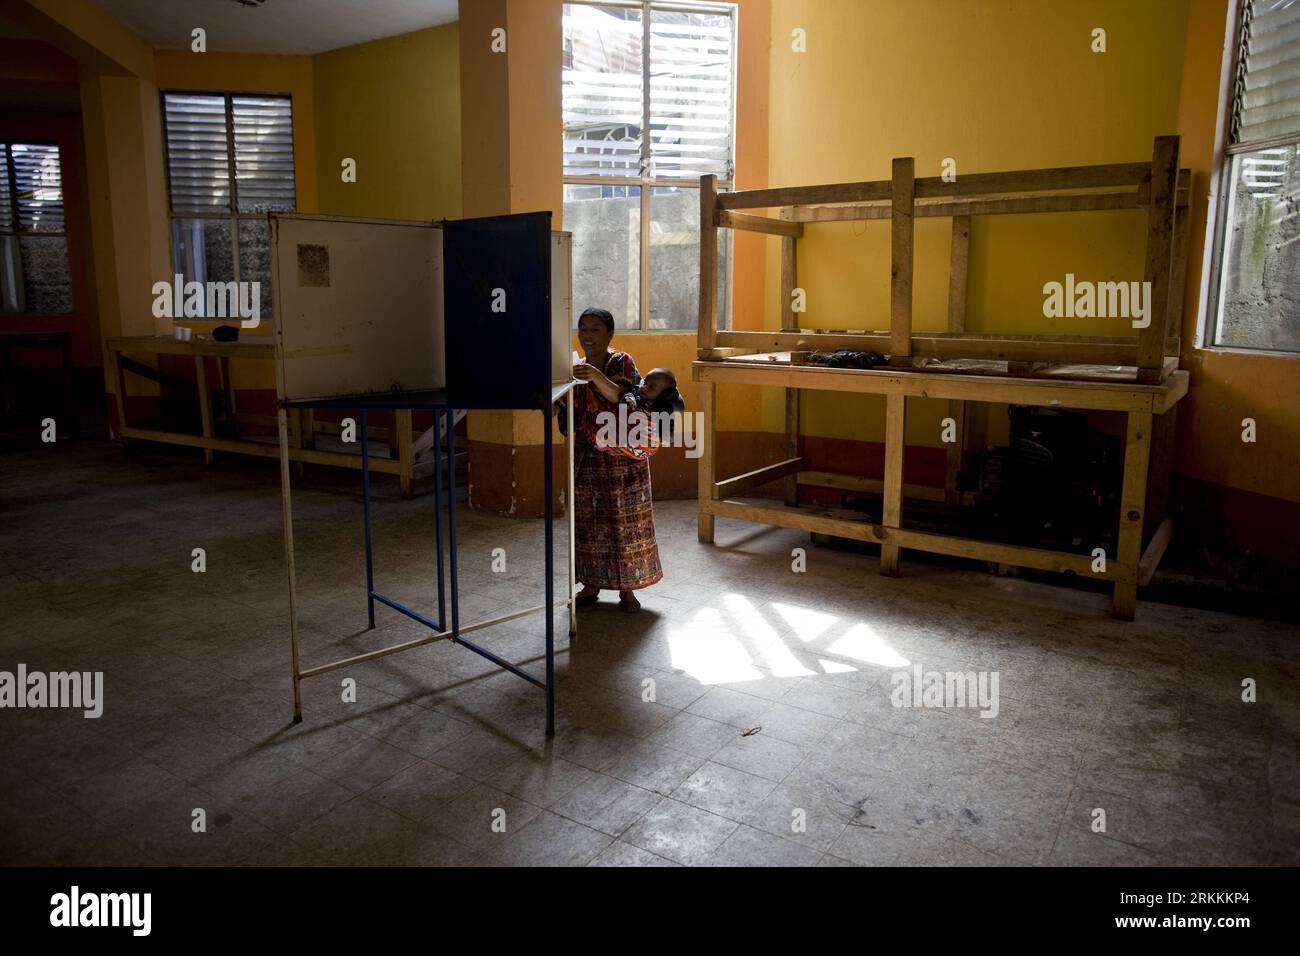 Bildnummer : 56254701 Datum : 06.11.2011 Copyright : imago/Xinhua (111107) -- SAN JUAN COMALAPA, 7 novembre 2011 (Xinhua) -- Une femme vote dans un bureau de vote de la province de San Juan Comalapa, au Guatemala, le 6 novembre 2011. Les Guatémaltèques ont commencé à se rendre dans les bureaux de vote dimanche matin pour voter au second tour présidentiel de leur pays. Plus de 2 500 bureaux de vote à travers le pays d'Amérique centrale ont ouvert leurs portes à 7 heures (1300 heures GMT) pour l'élection, suite au premier tour de septembre. (Xinhua/Guillermo Arias) (PY) (srb) GUATEMALA-SAN JUAN COMALAPA-PESIDENTIAL EL Banque D'Images